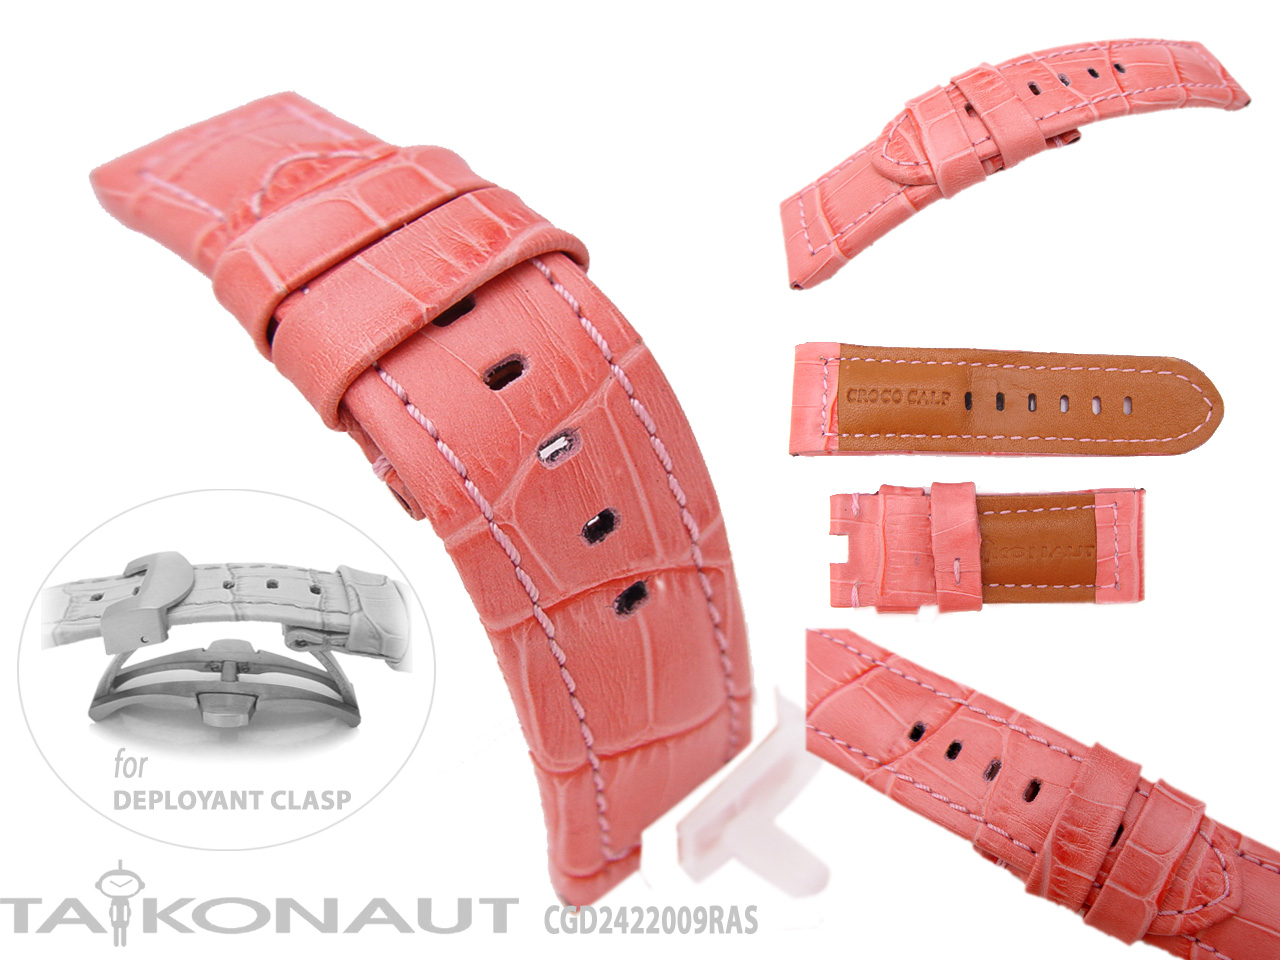 CrocoCalf (Croco Grain) in Pink 24mm Deplyant Strap Extra Short